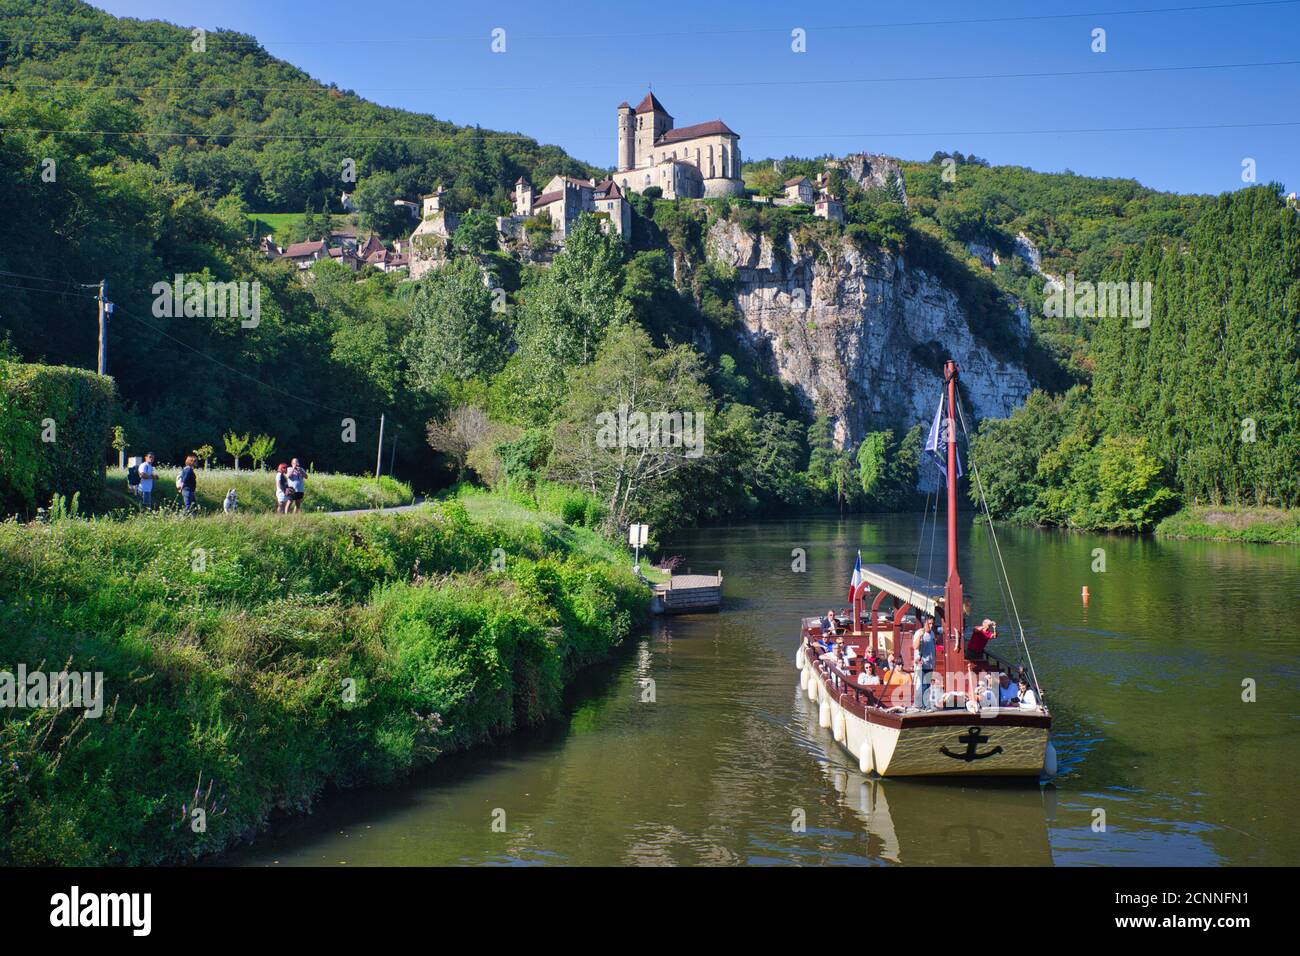 Una vista panoramica del pittoresco villaggio di St Cirq-Lapopie con il fiume, una barca passeggeri e gola in primo piano, Midi iPyrenees, Lot, Cahors, Francia Foto Stock